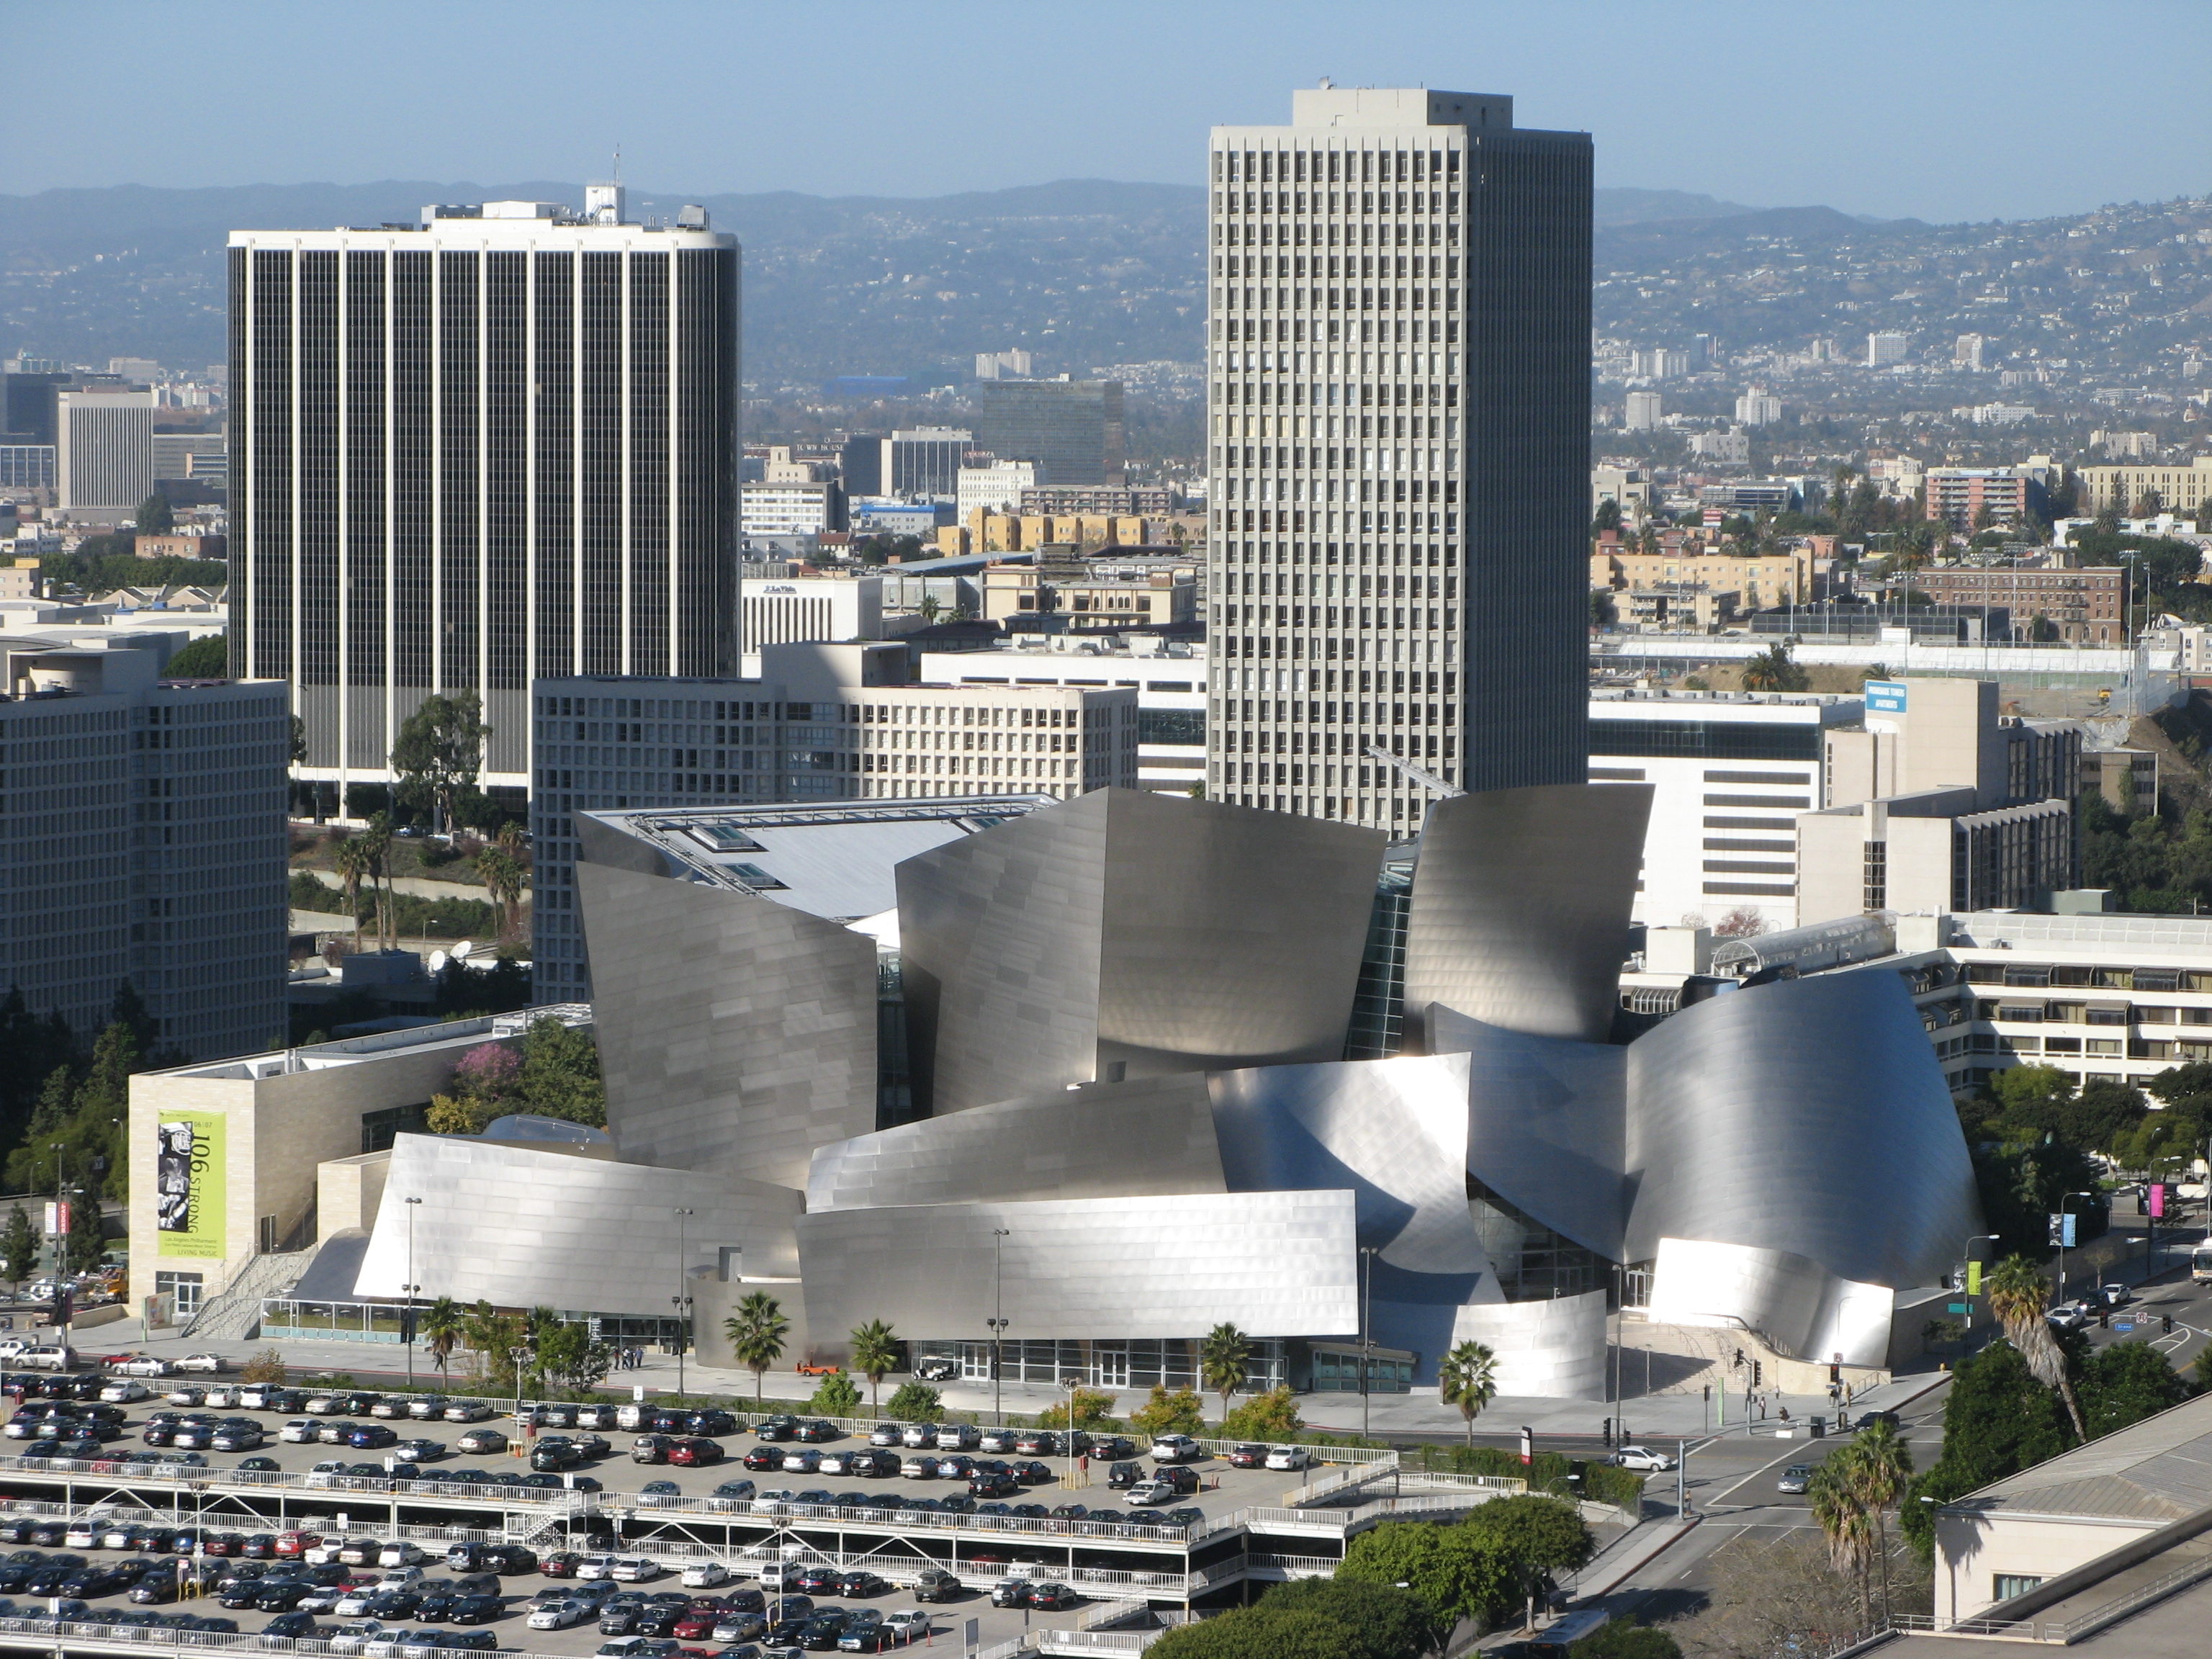 Зал уолта диснея. Лос Анджелес концертный зал Уолта Диснея. Фрэнк Гери Лос Анджелес. Фрэнк Гери концертный зал Диснея в Лос Анджелесе. Концертный зал Уолта Диснея в Лос-Анджелесе архитектура.